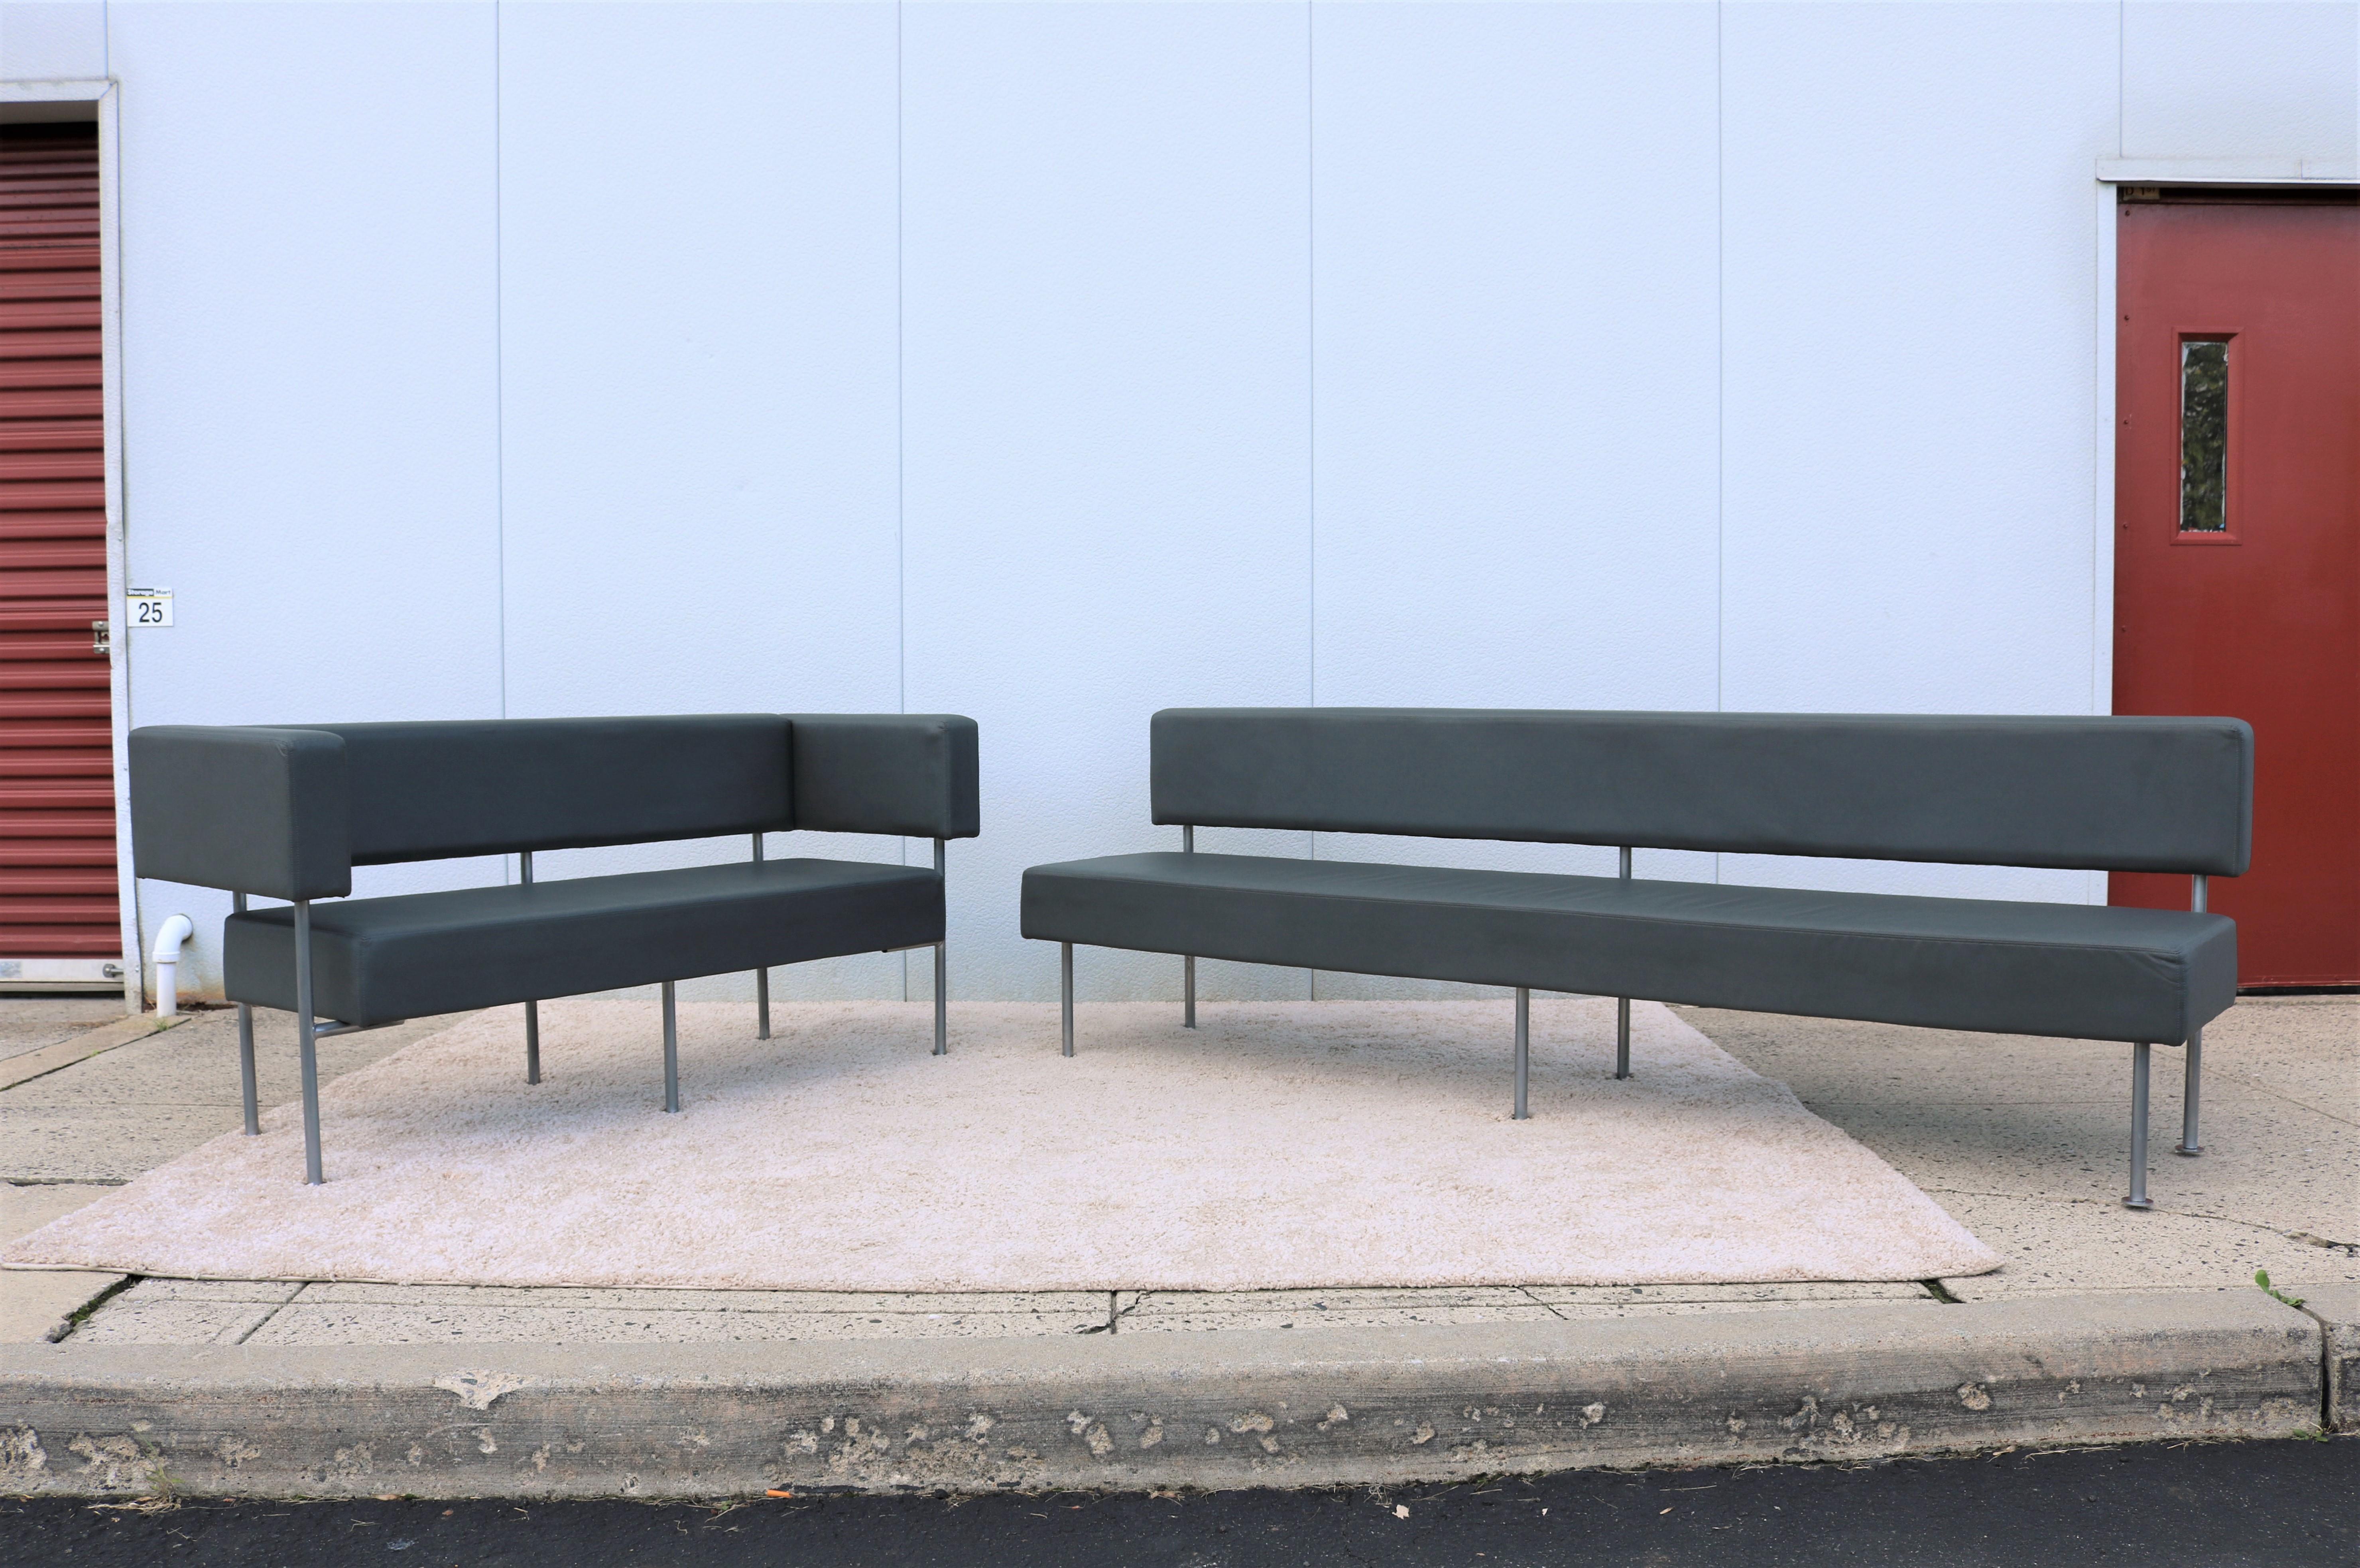 Zeitgenössisches, modernes und elegantes Schwebesofa Longo, bestehend aus 2 Teilen, einem Sofa ohne Armlehnen und einem Sofasessel.
Hochwertiges Design und hohe Strapazierfähigkeit, bietet entspannten Komfort und außergewöhnliche